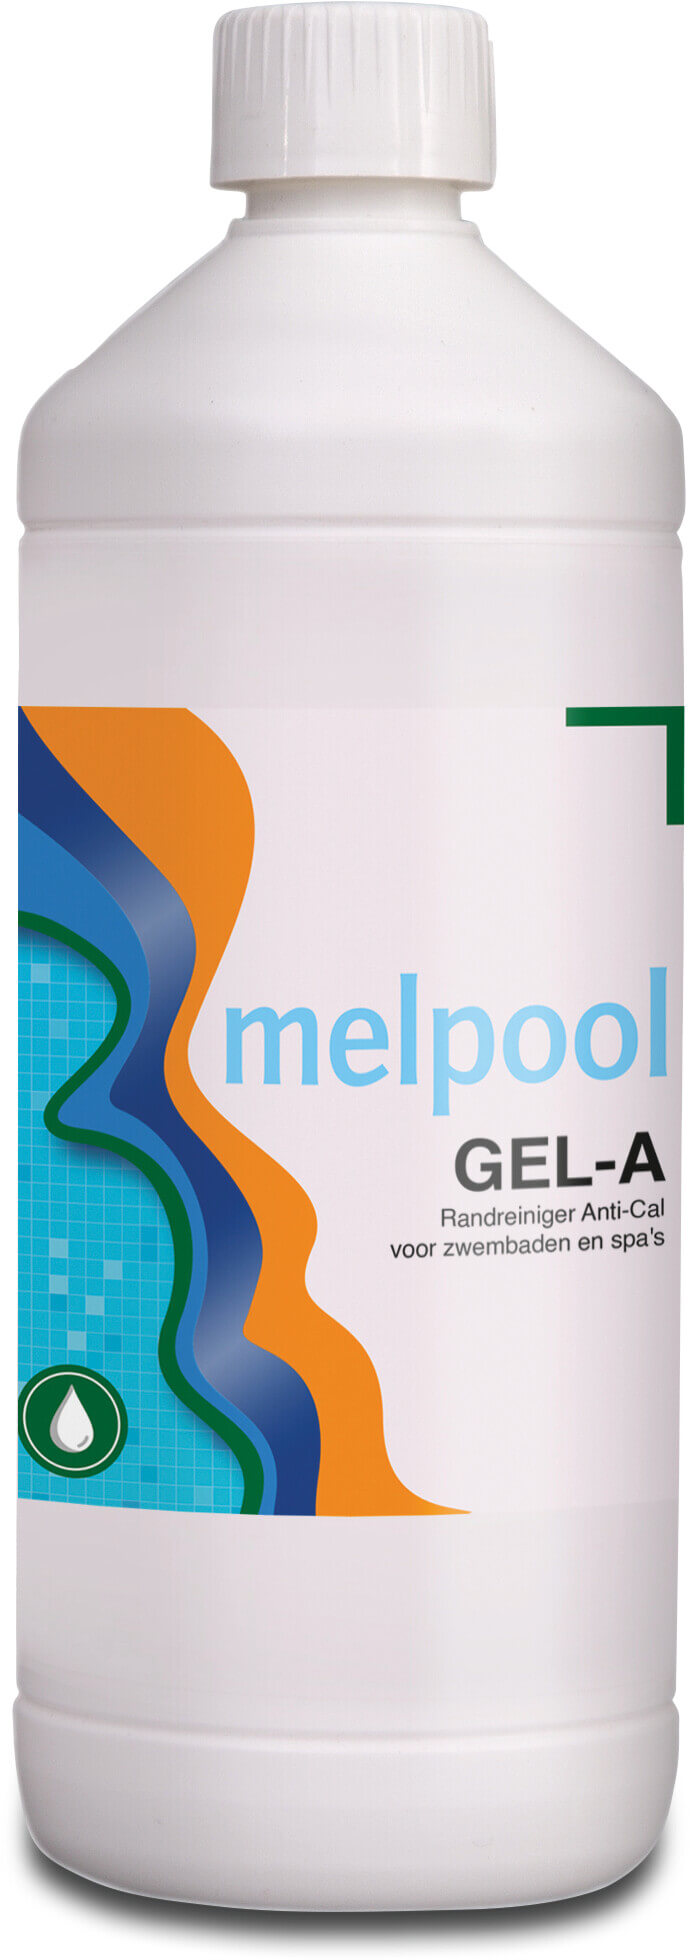 Melpool GEL-A Fosforsyreopløsning 1L